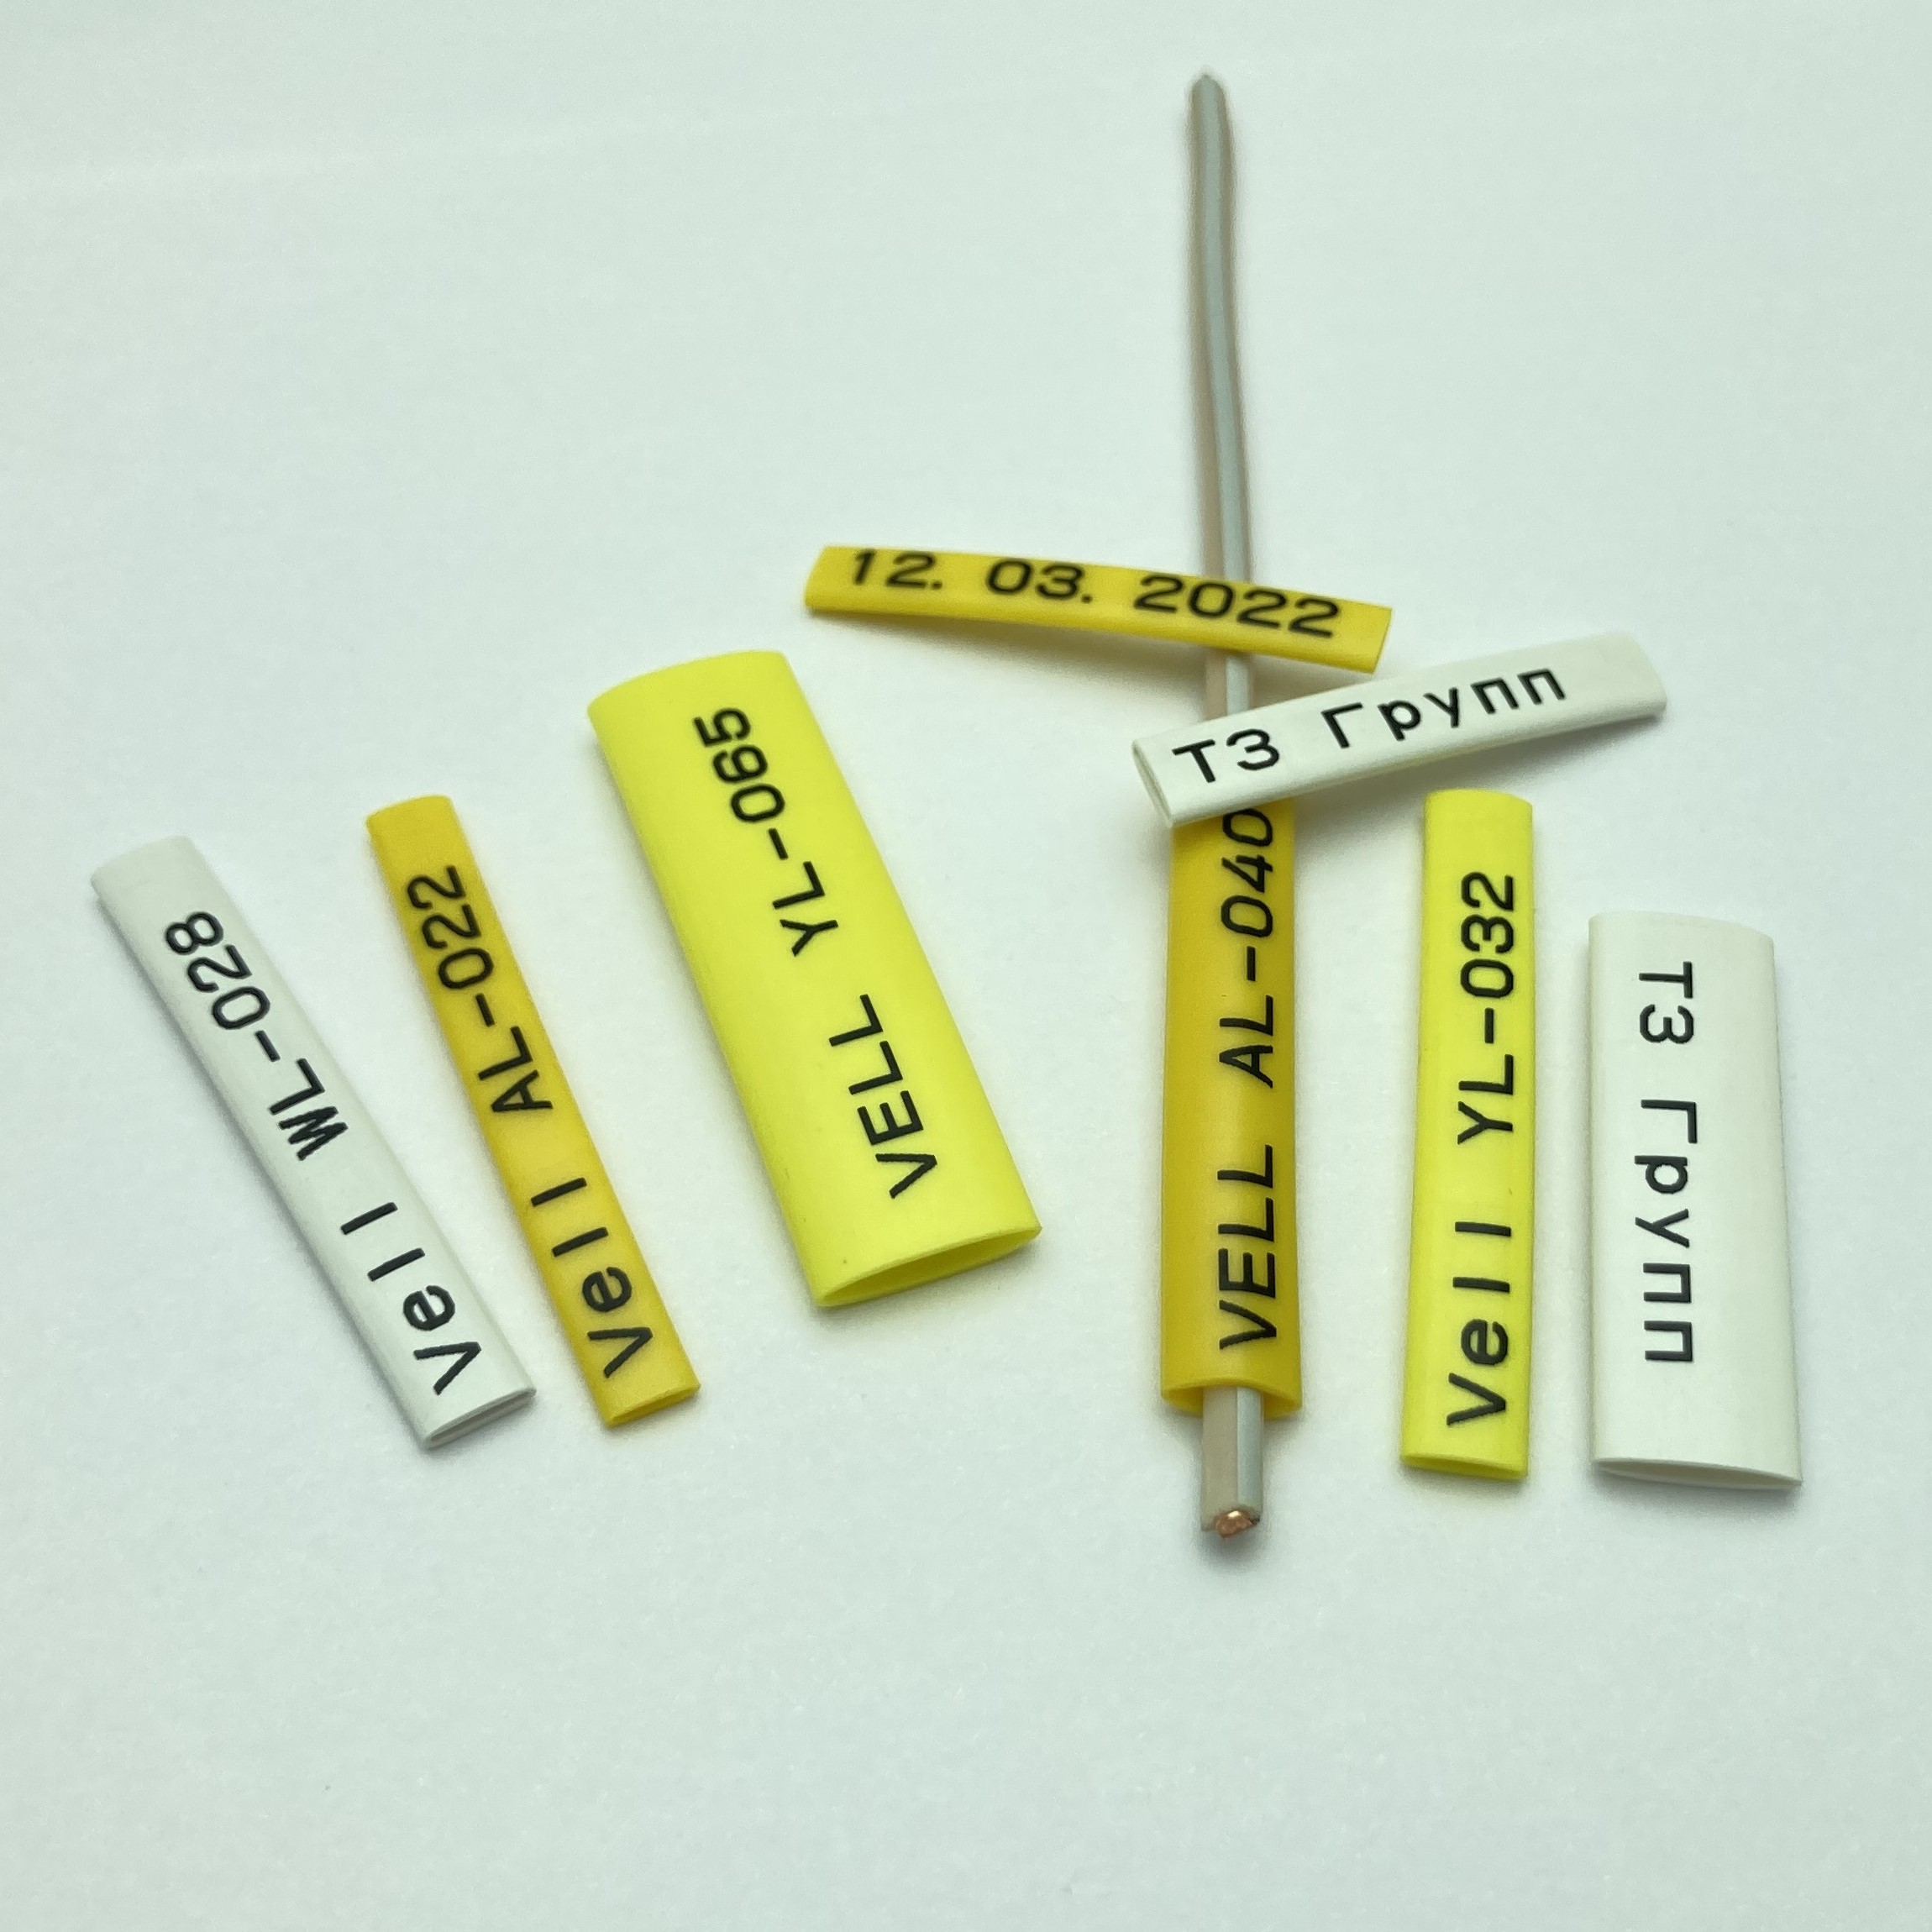 Фото Профиль ПВХ овальный Vell AL-040 для маркировки проводов, Ø 4,0 мм, 200 метров, янтарно-желтый, аналог Partex PO-07 (самозатухающий) {590397} (3)